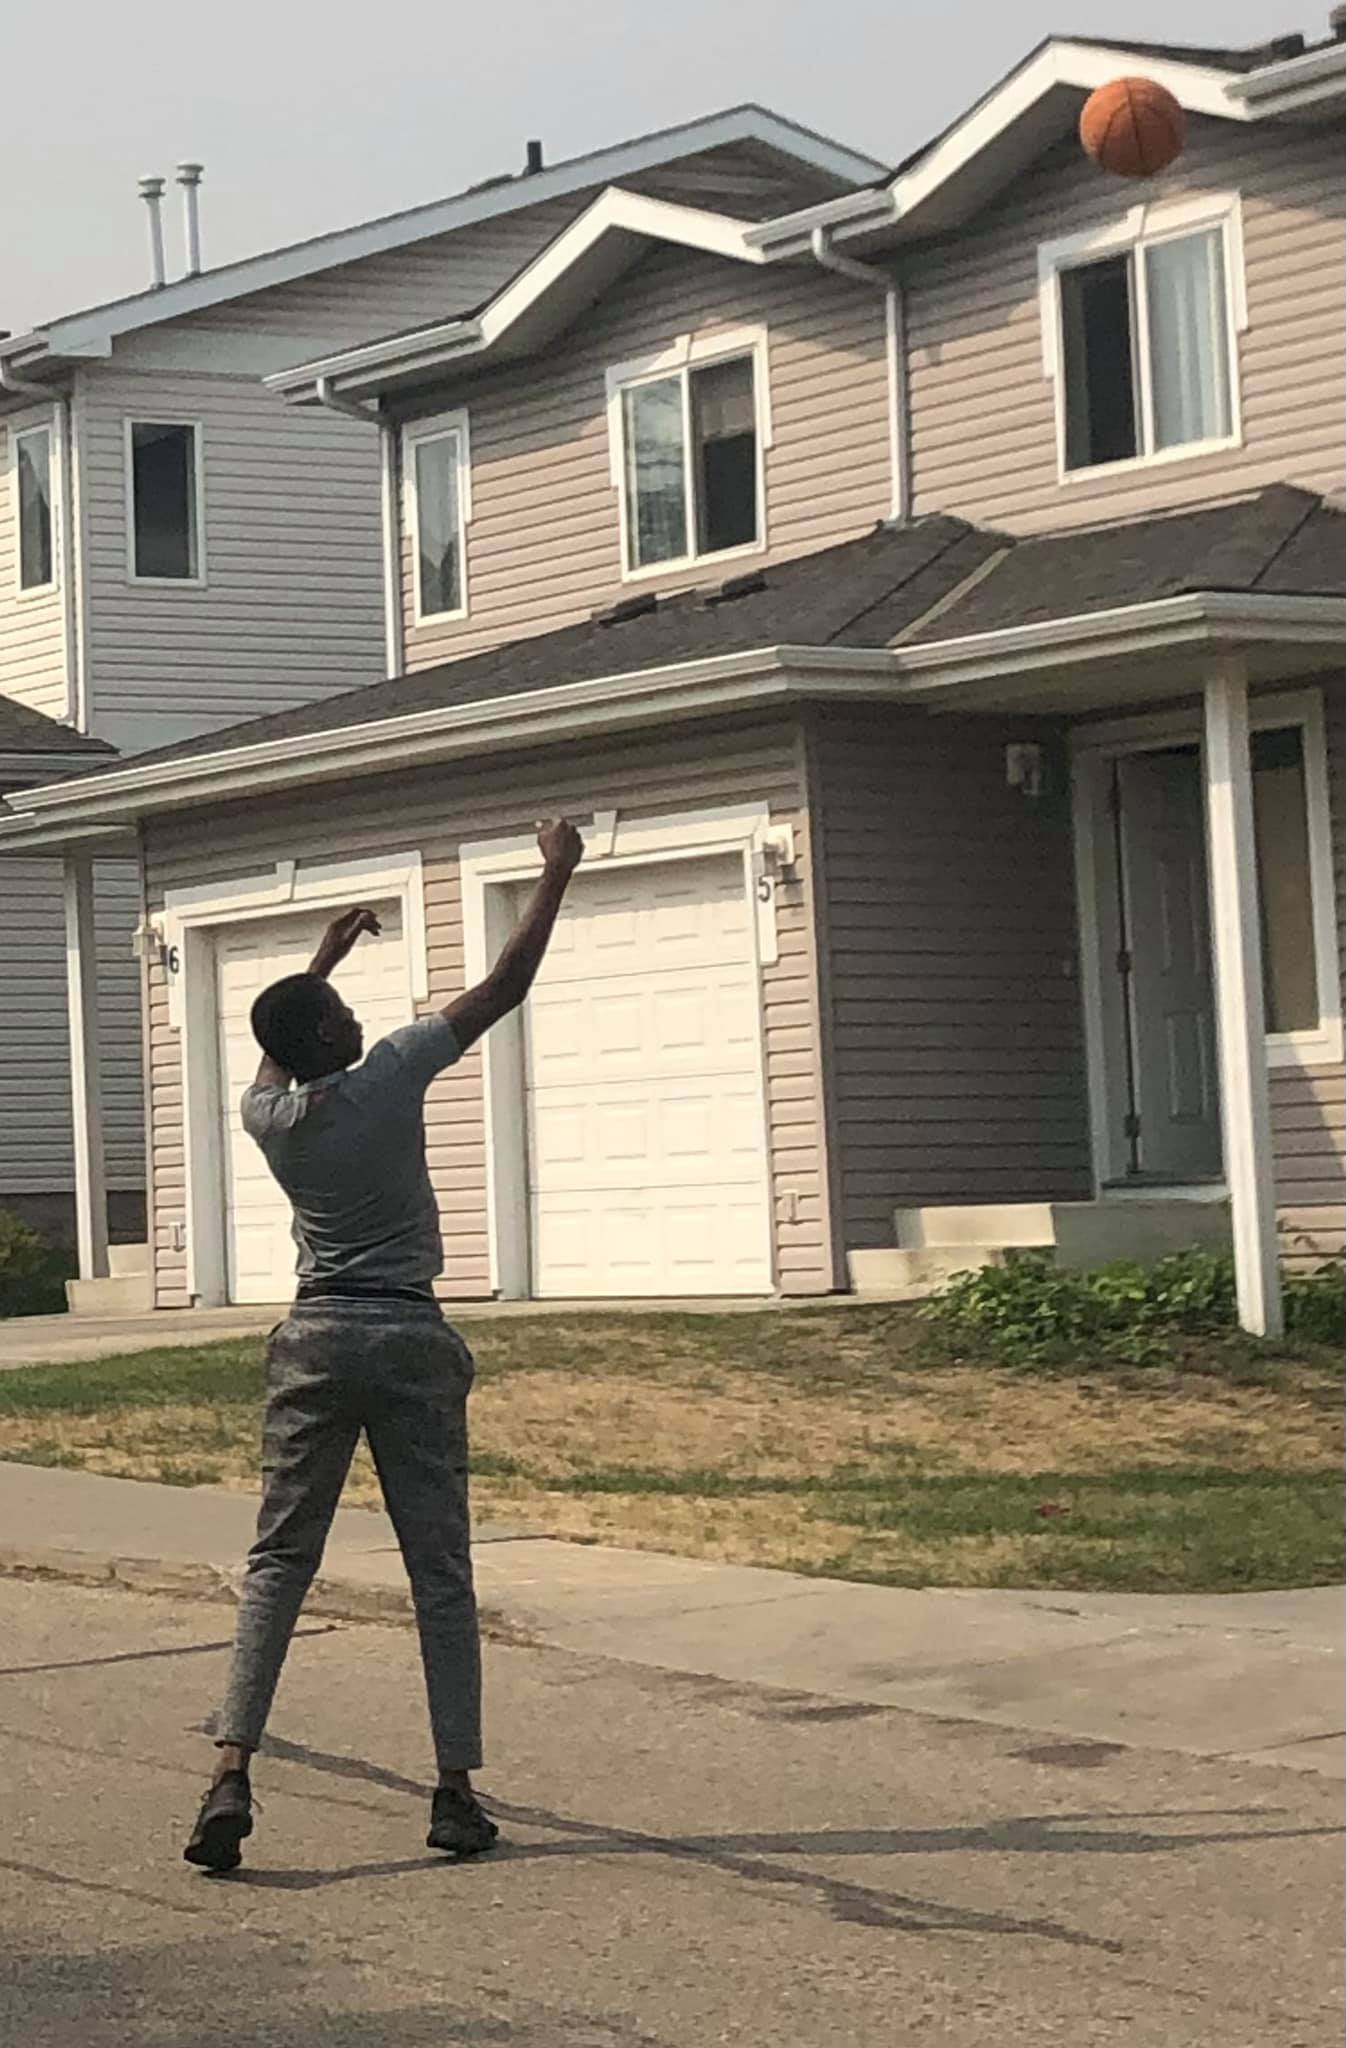 Anthony Muobike practicando baloncesto en su vecindario. | Foto: Facebook/ian.ray.524